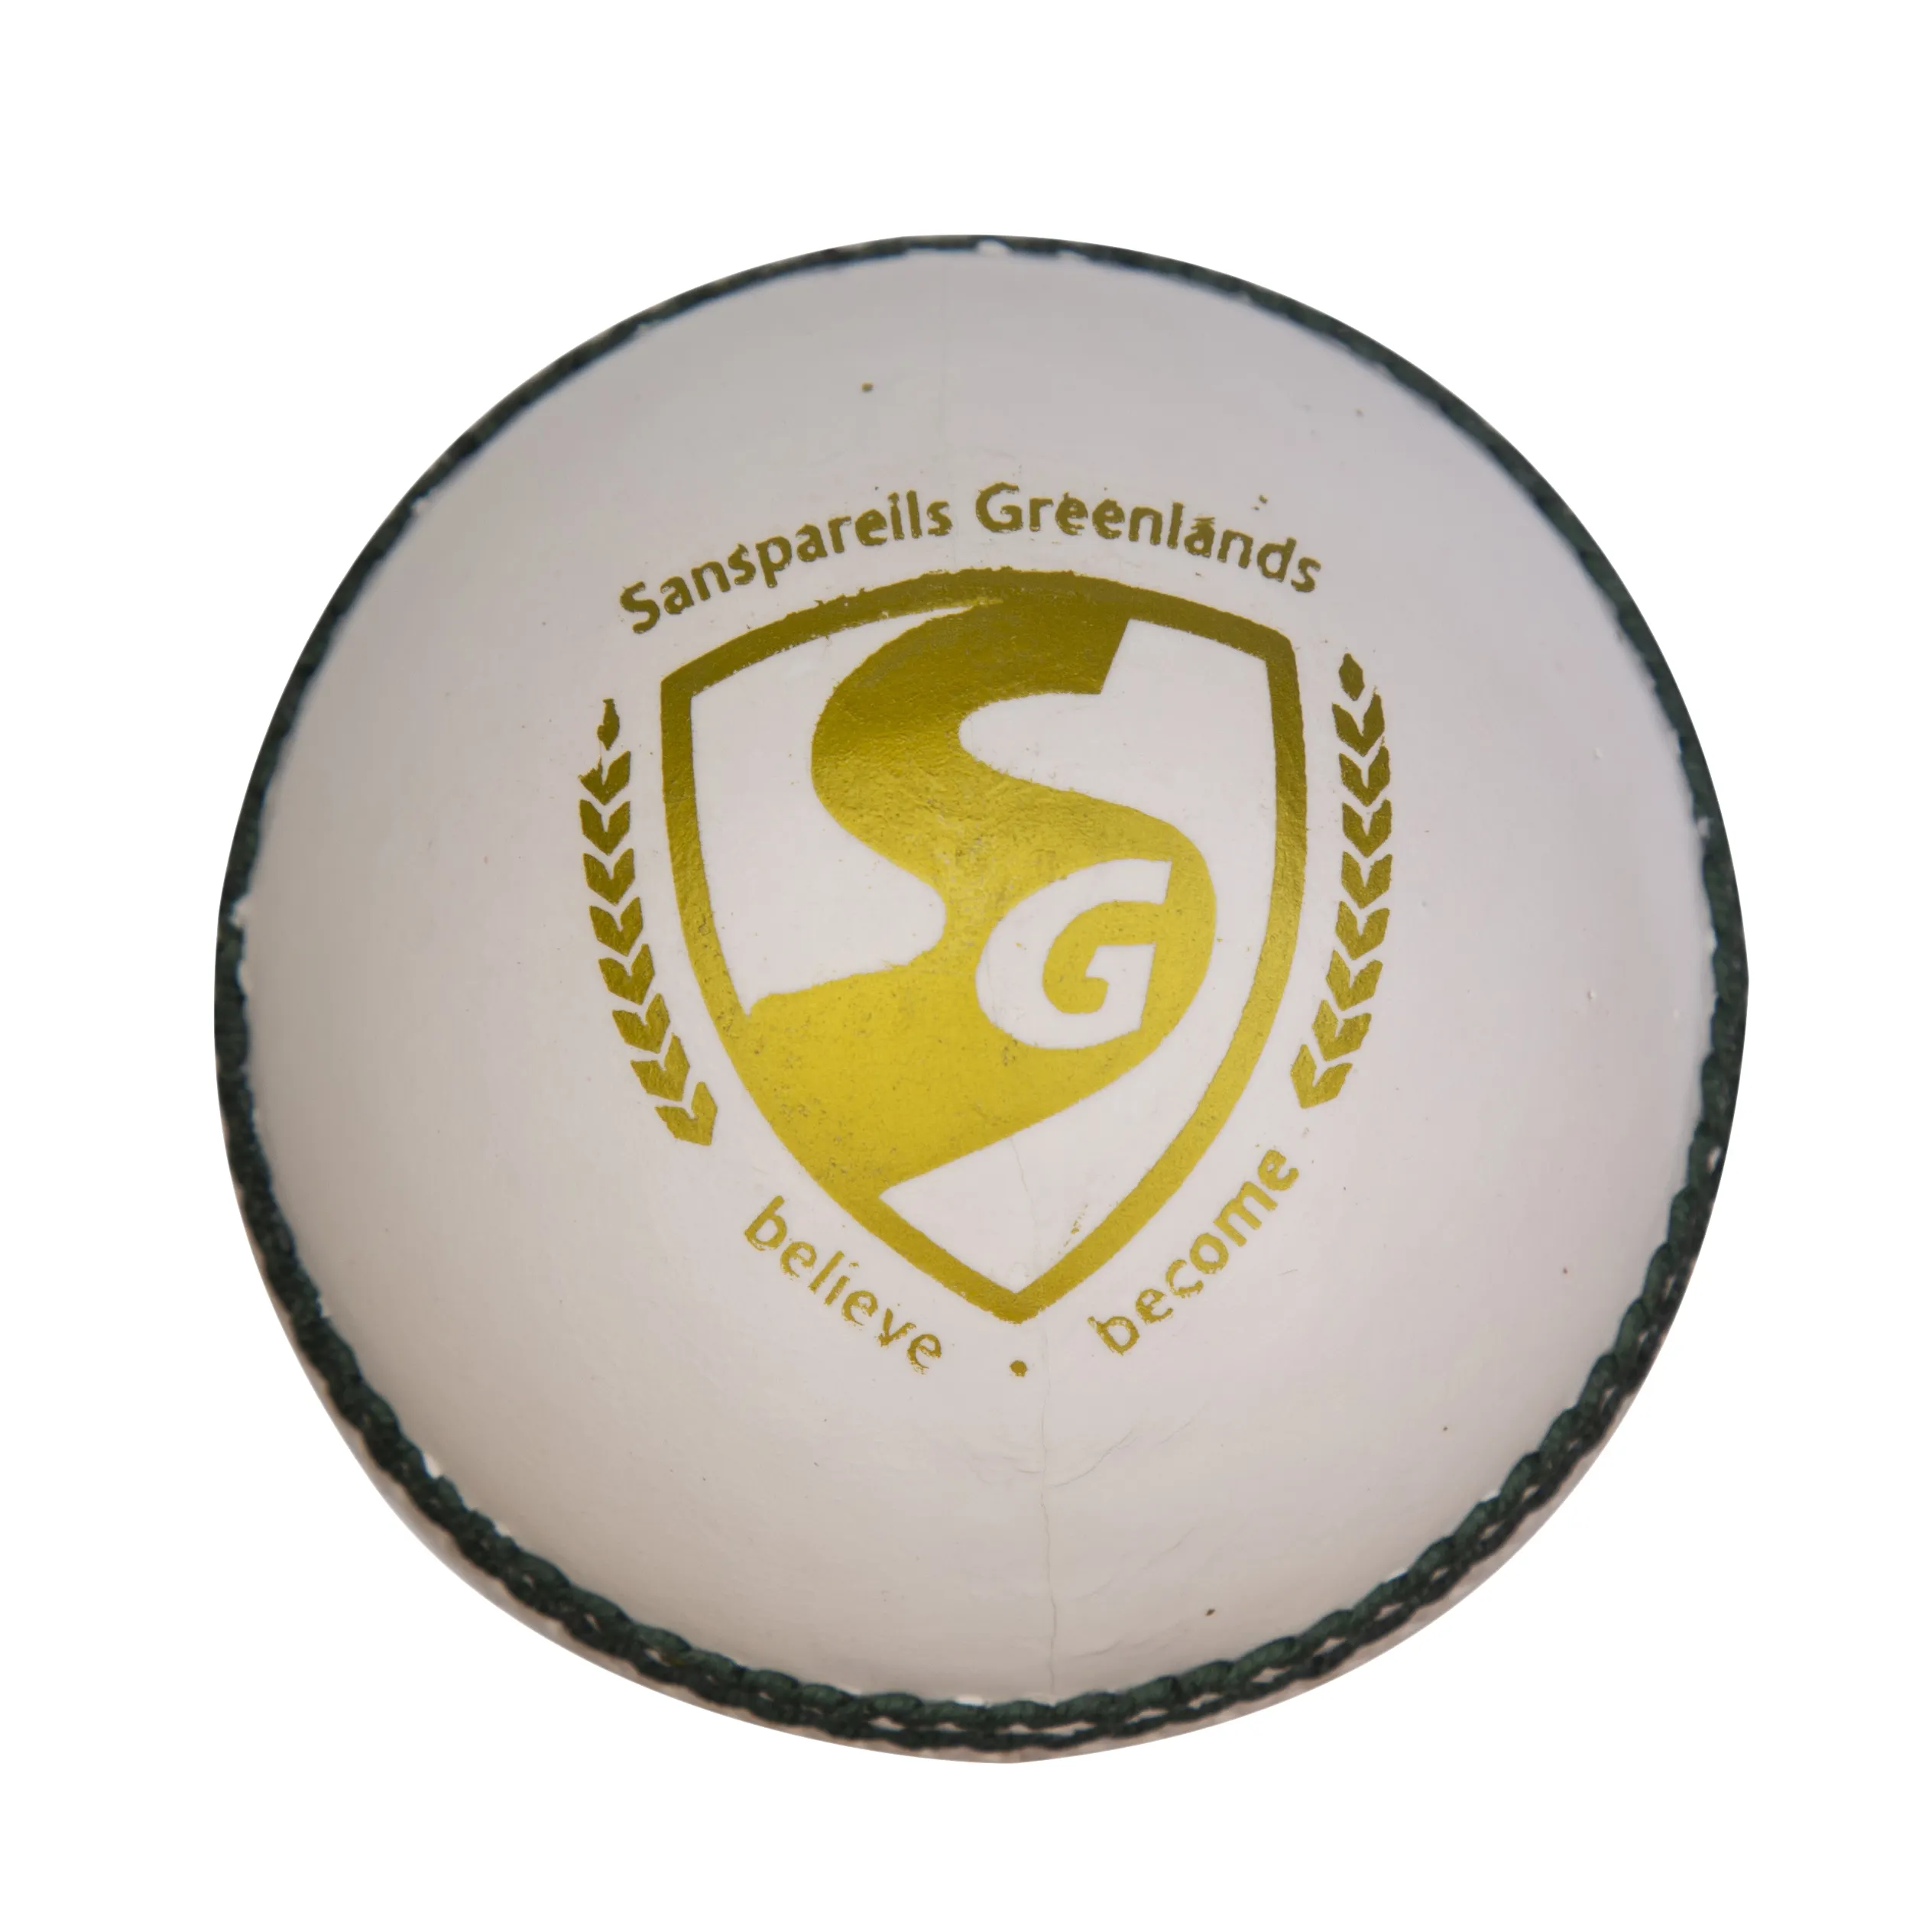 Hakiki deri orijinal kriket topu SG marka hafif beyaz renk profesyonel oyun maç topu en iyi kriket maç topu